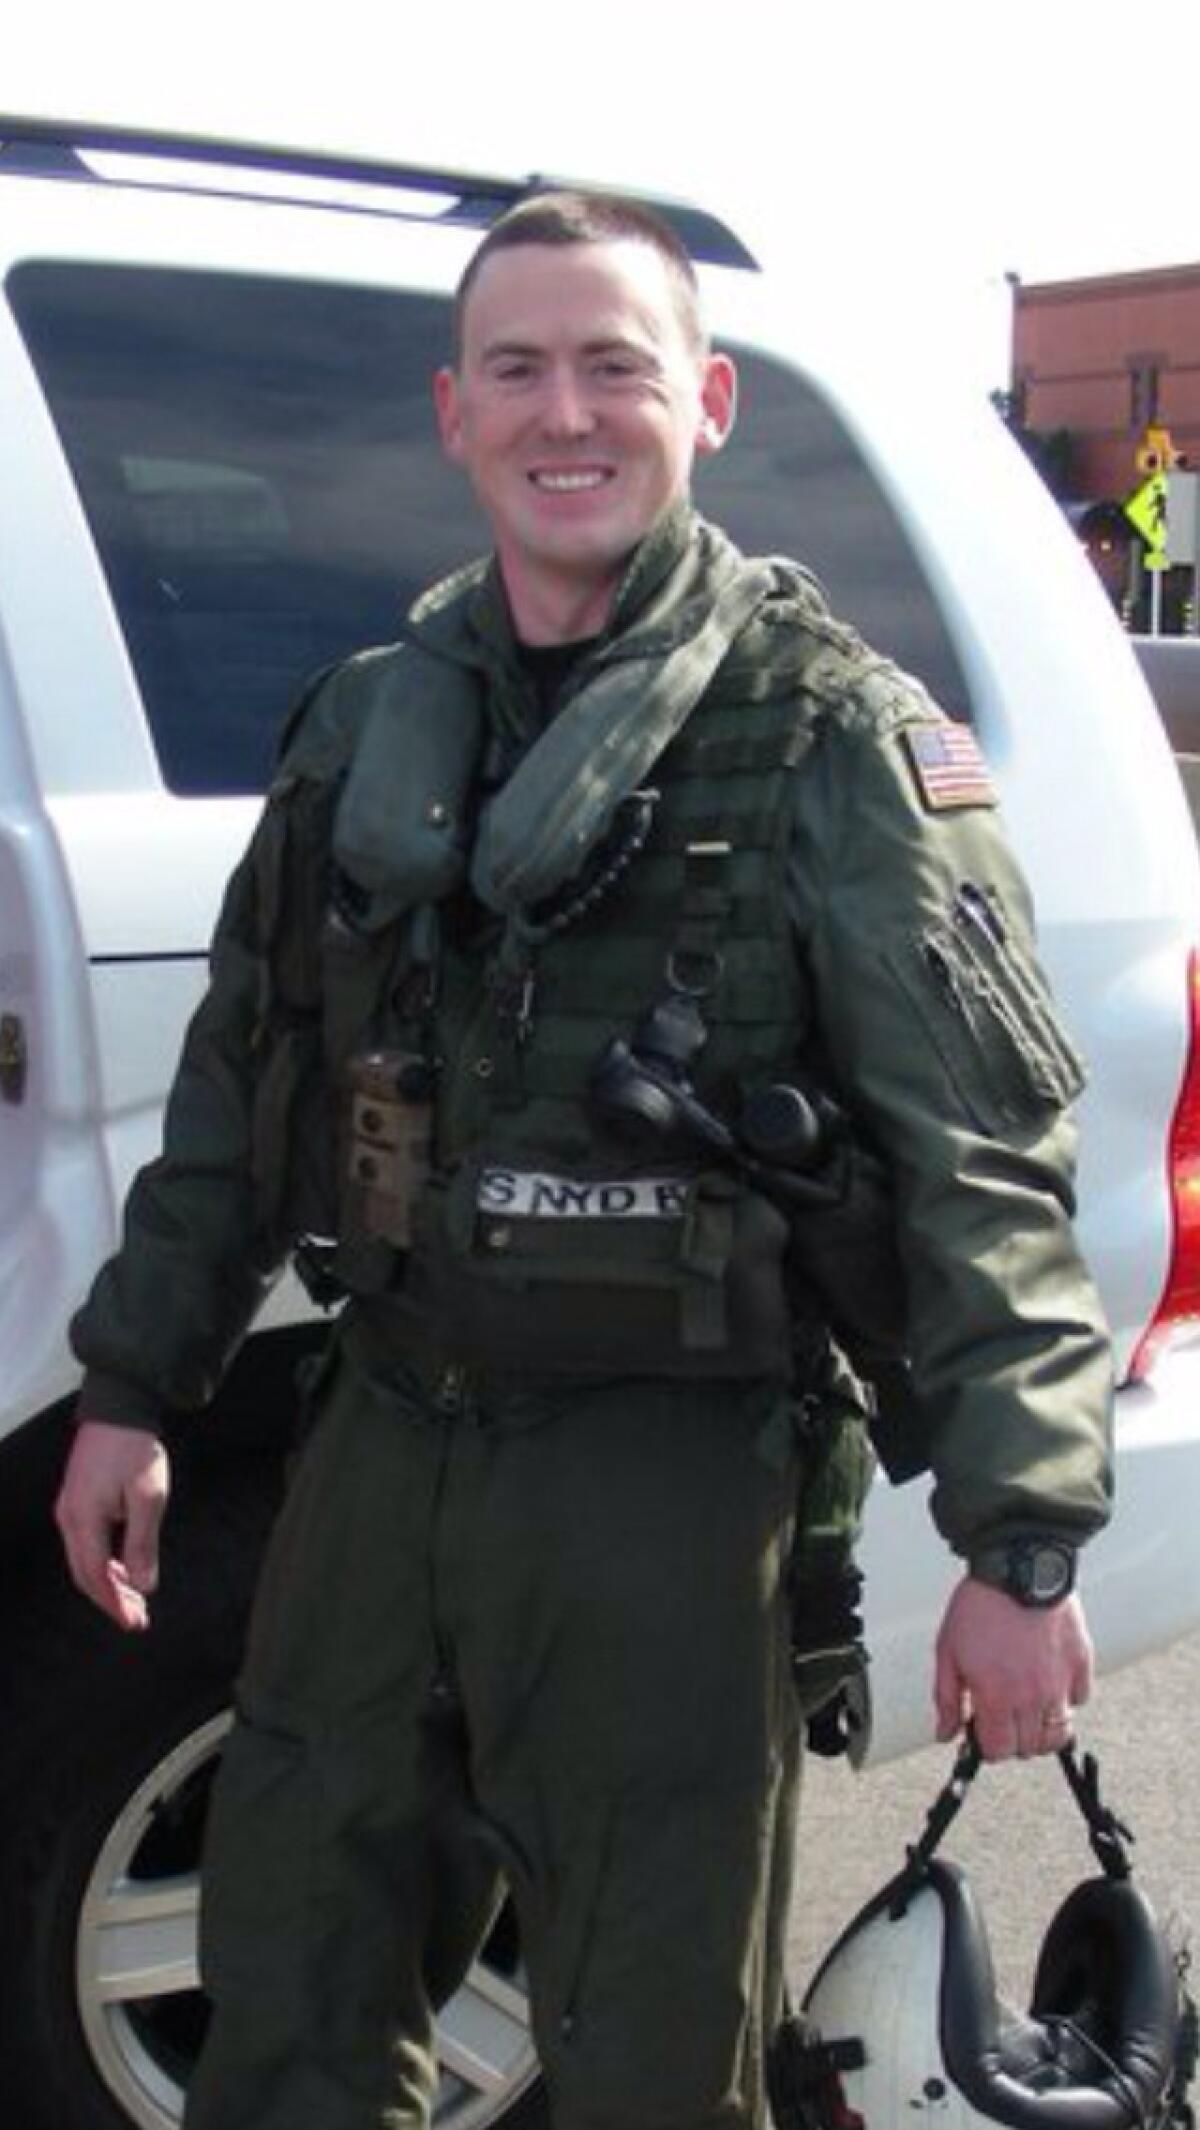 Lt. Sean Christopher Snyder